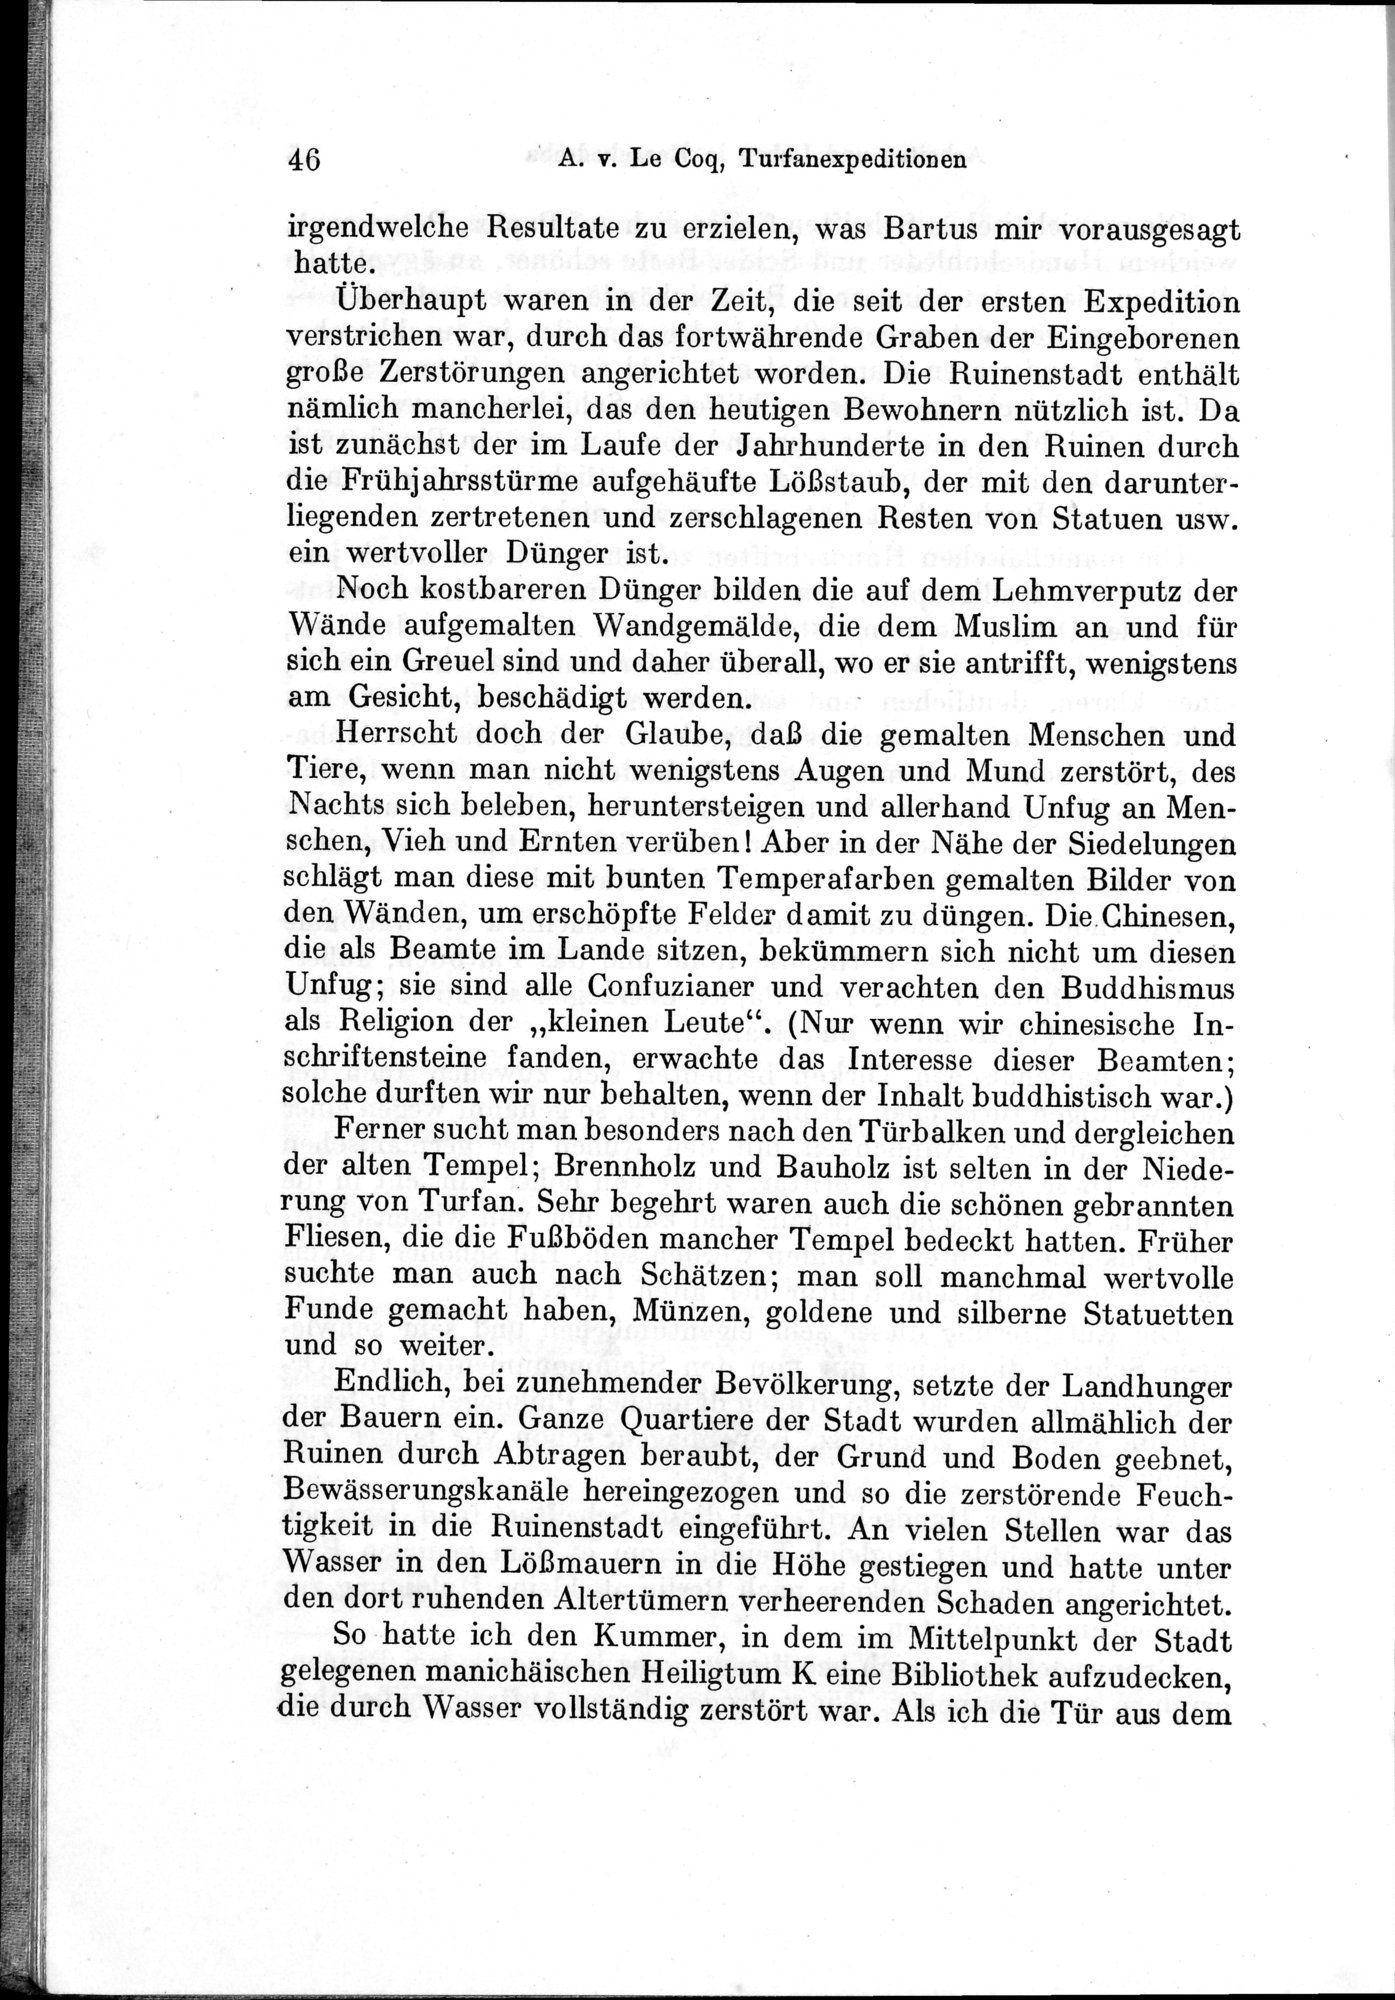 Auf Hellas Spuren in Ostturkistan : vol.1 / Page 72 (Grayscale High Resolution Image)